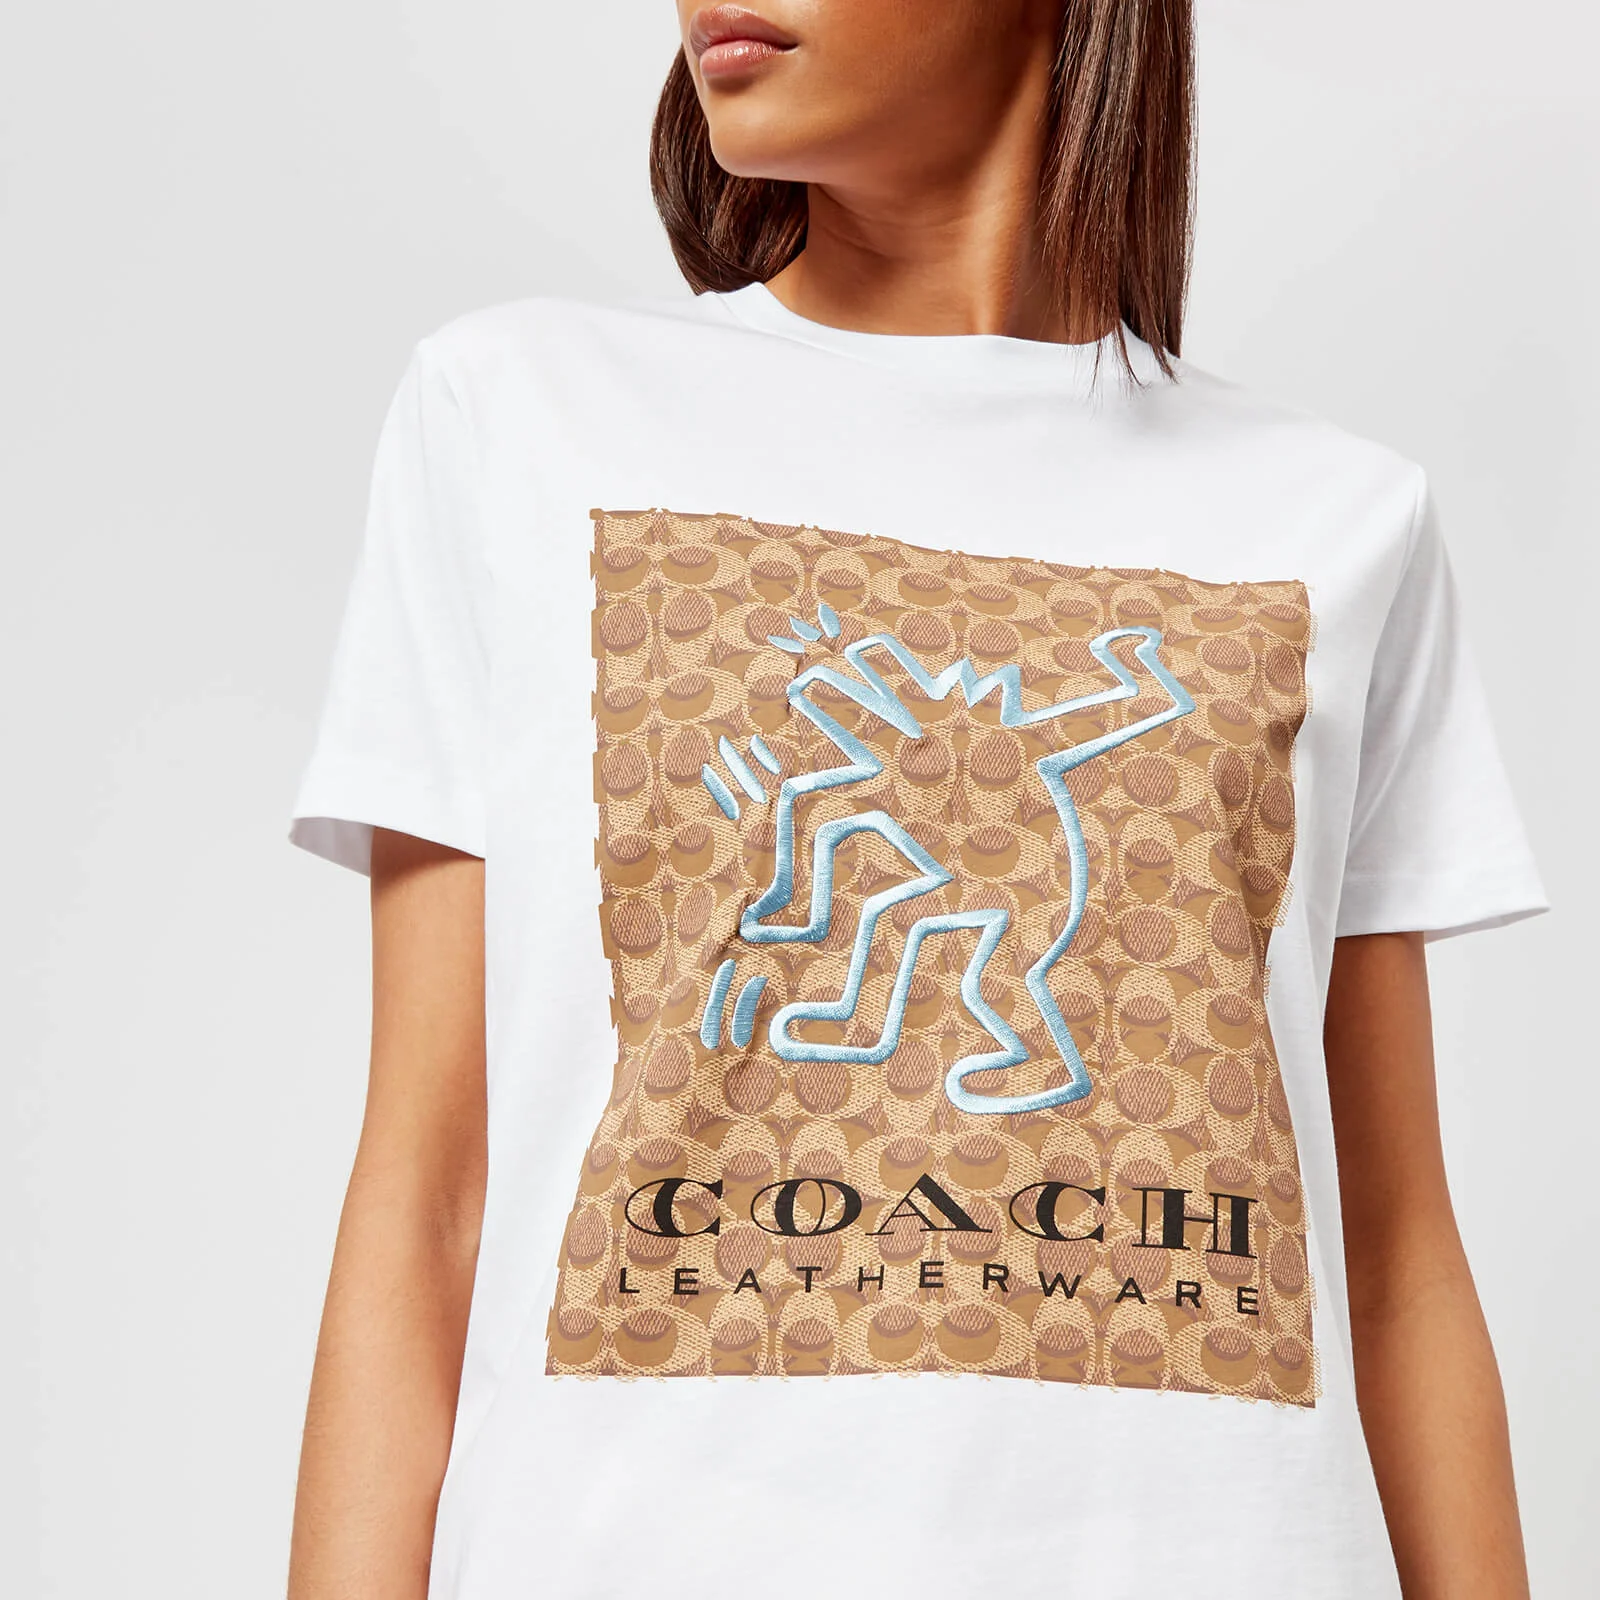 Coach 1941 Women's Coach X Keith Haring T-Shirt - Optic White Image 1